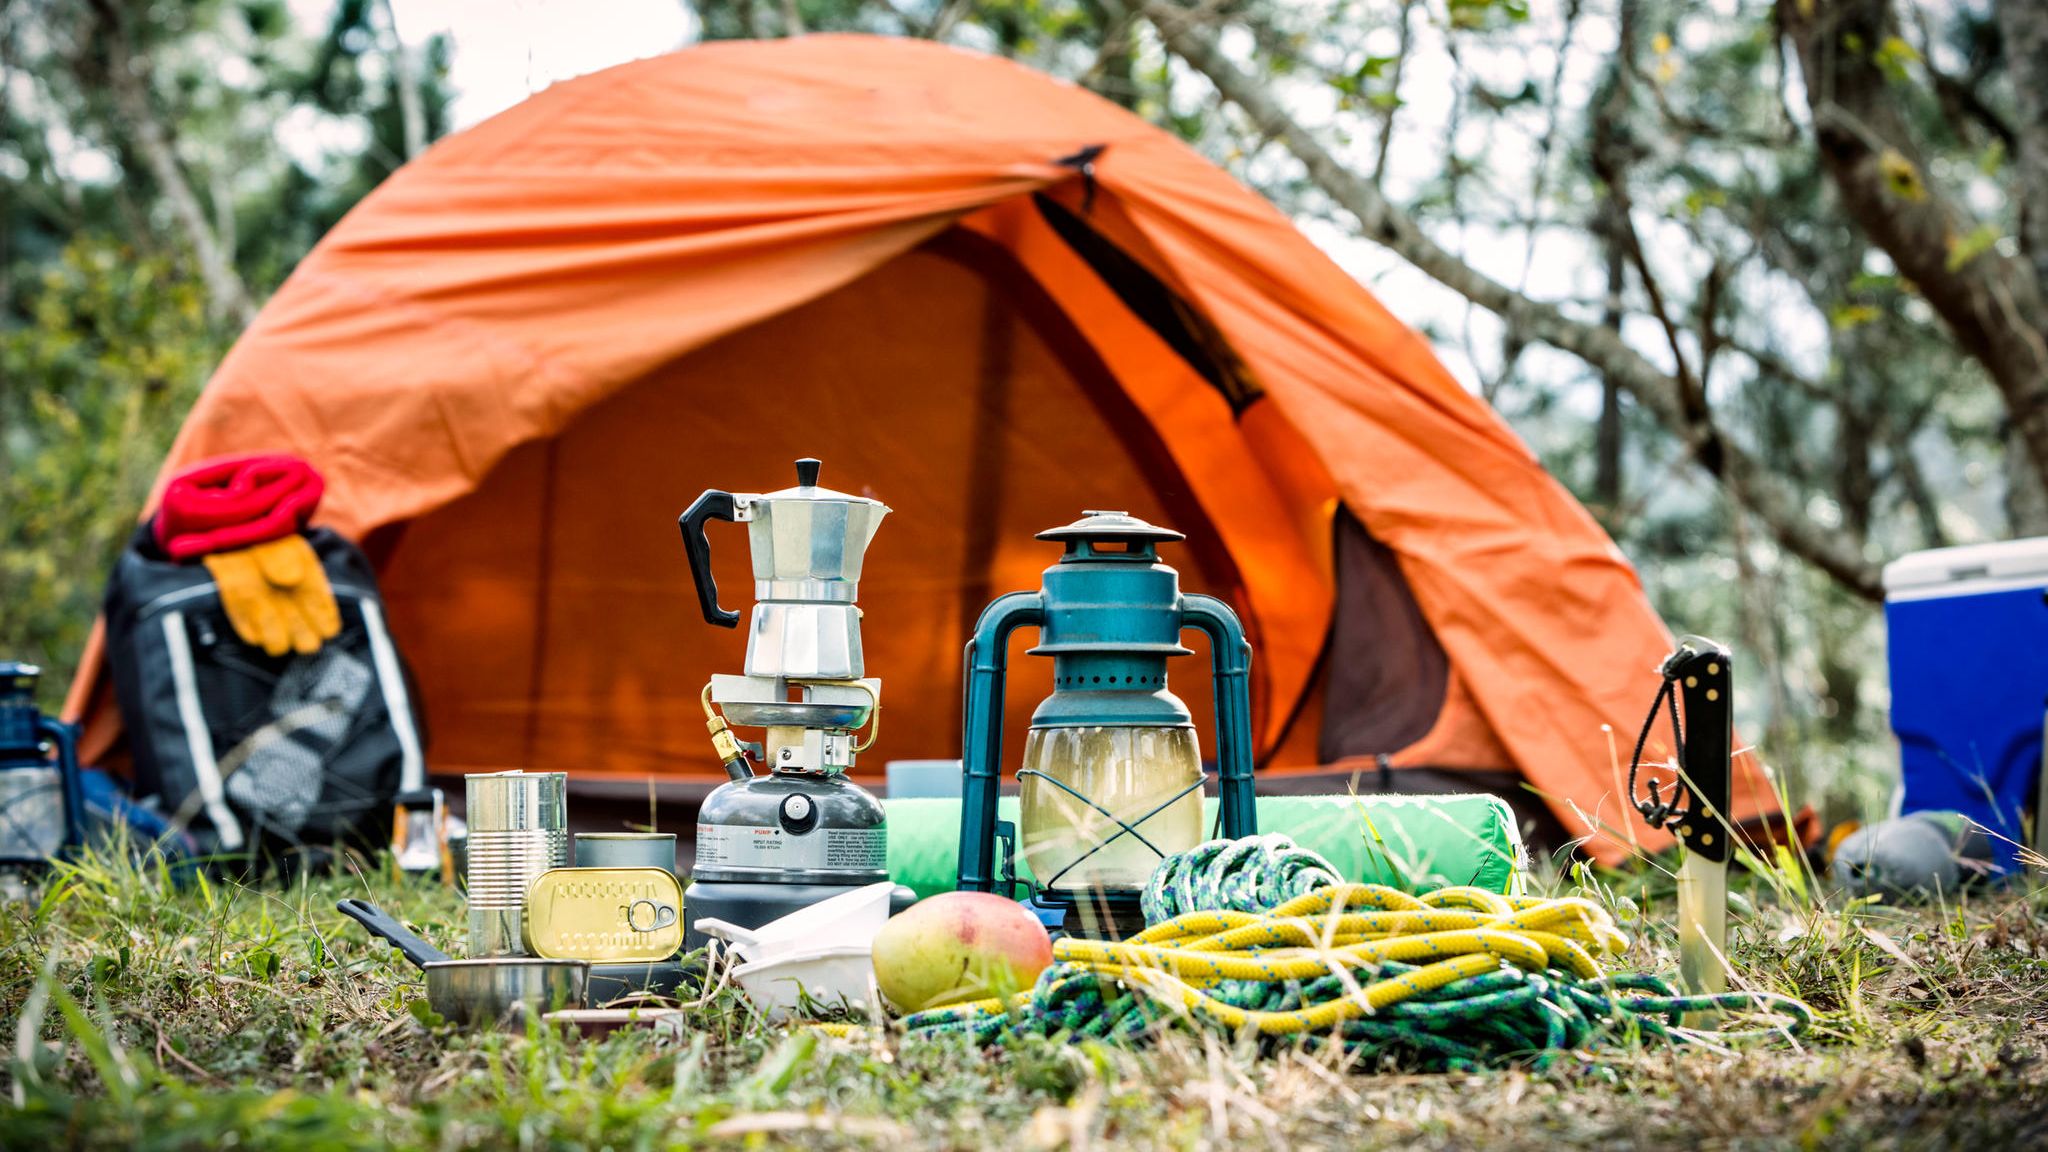 Wohnmobil-Gadgets: 10 nützliche Produkte fürs Camping